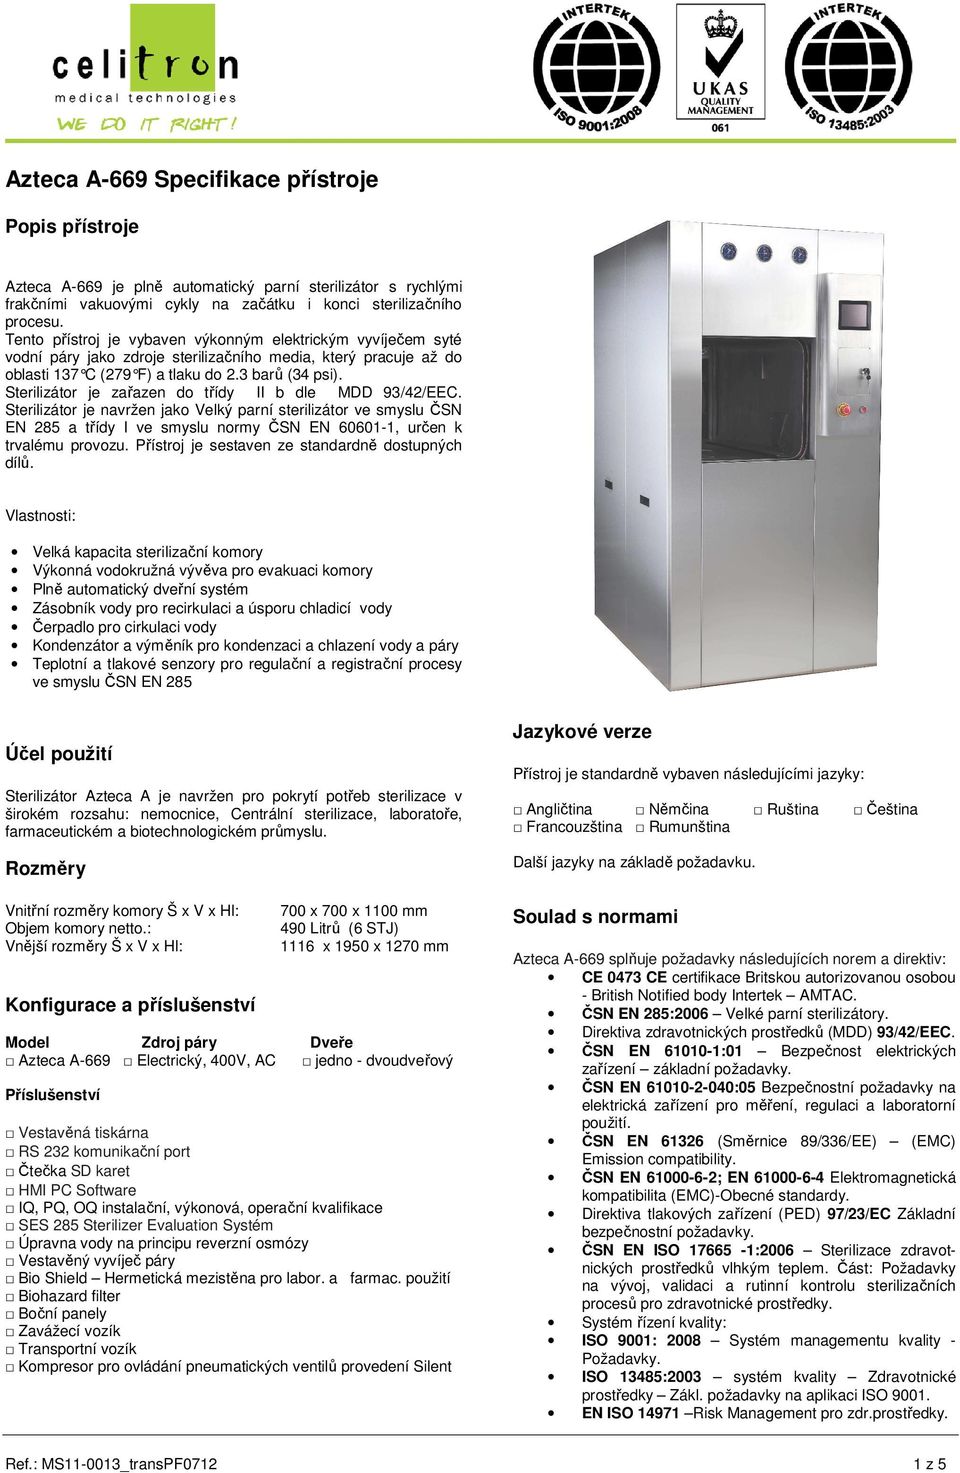 Sterilizátor je navržen jako Velký parní sterilizátor ve smyslu ČSN EN 285 a třídy I ve smyslu normy ČSN EN 60601-1, určen k trvalému provozu. Přístroj je sestaven ze standardně dostupných dílů.